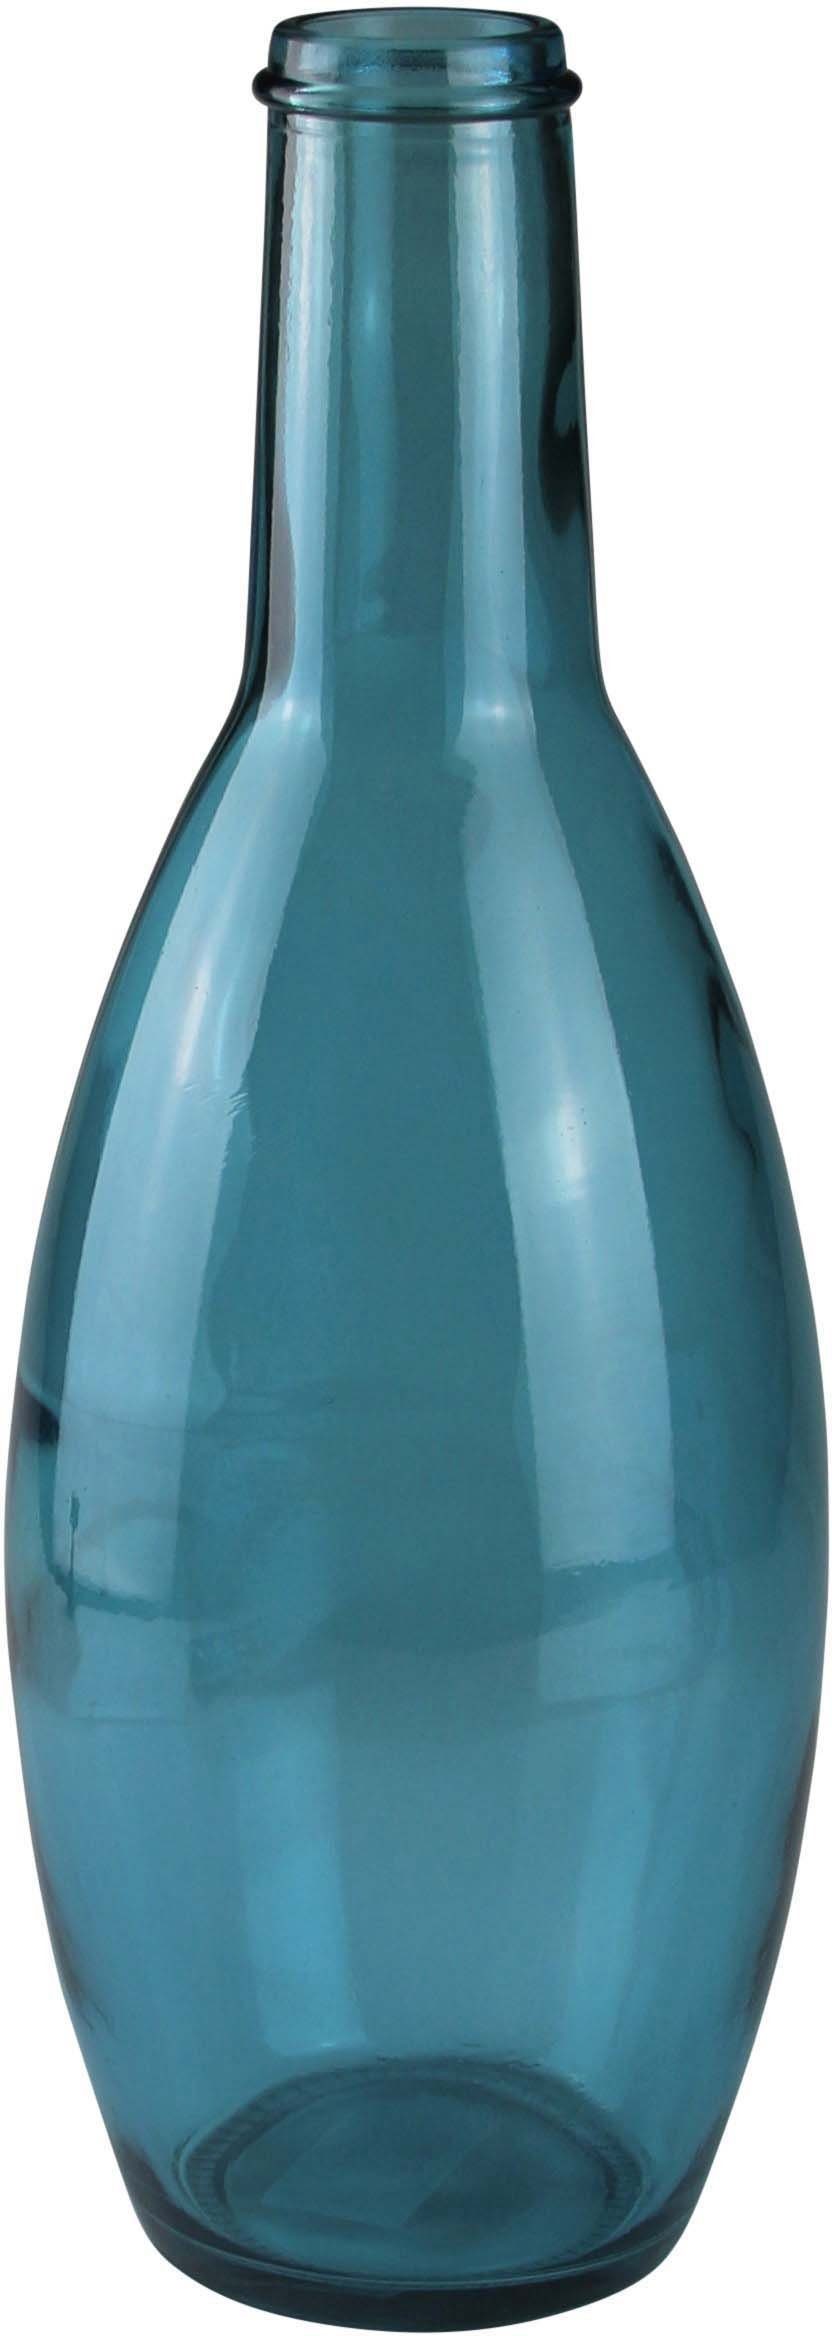 blau mundgelasen, Bodenvase, Höhe 45 cm Design AM